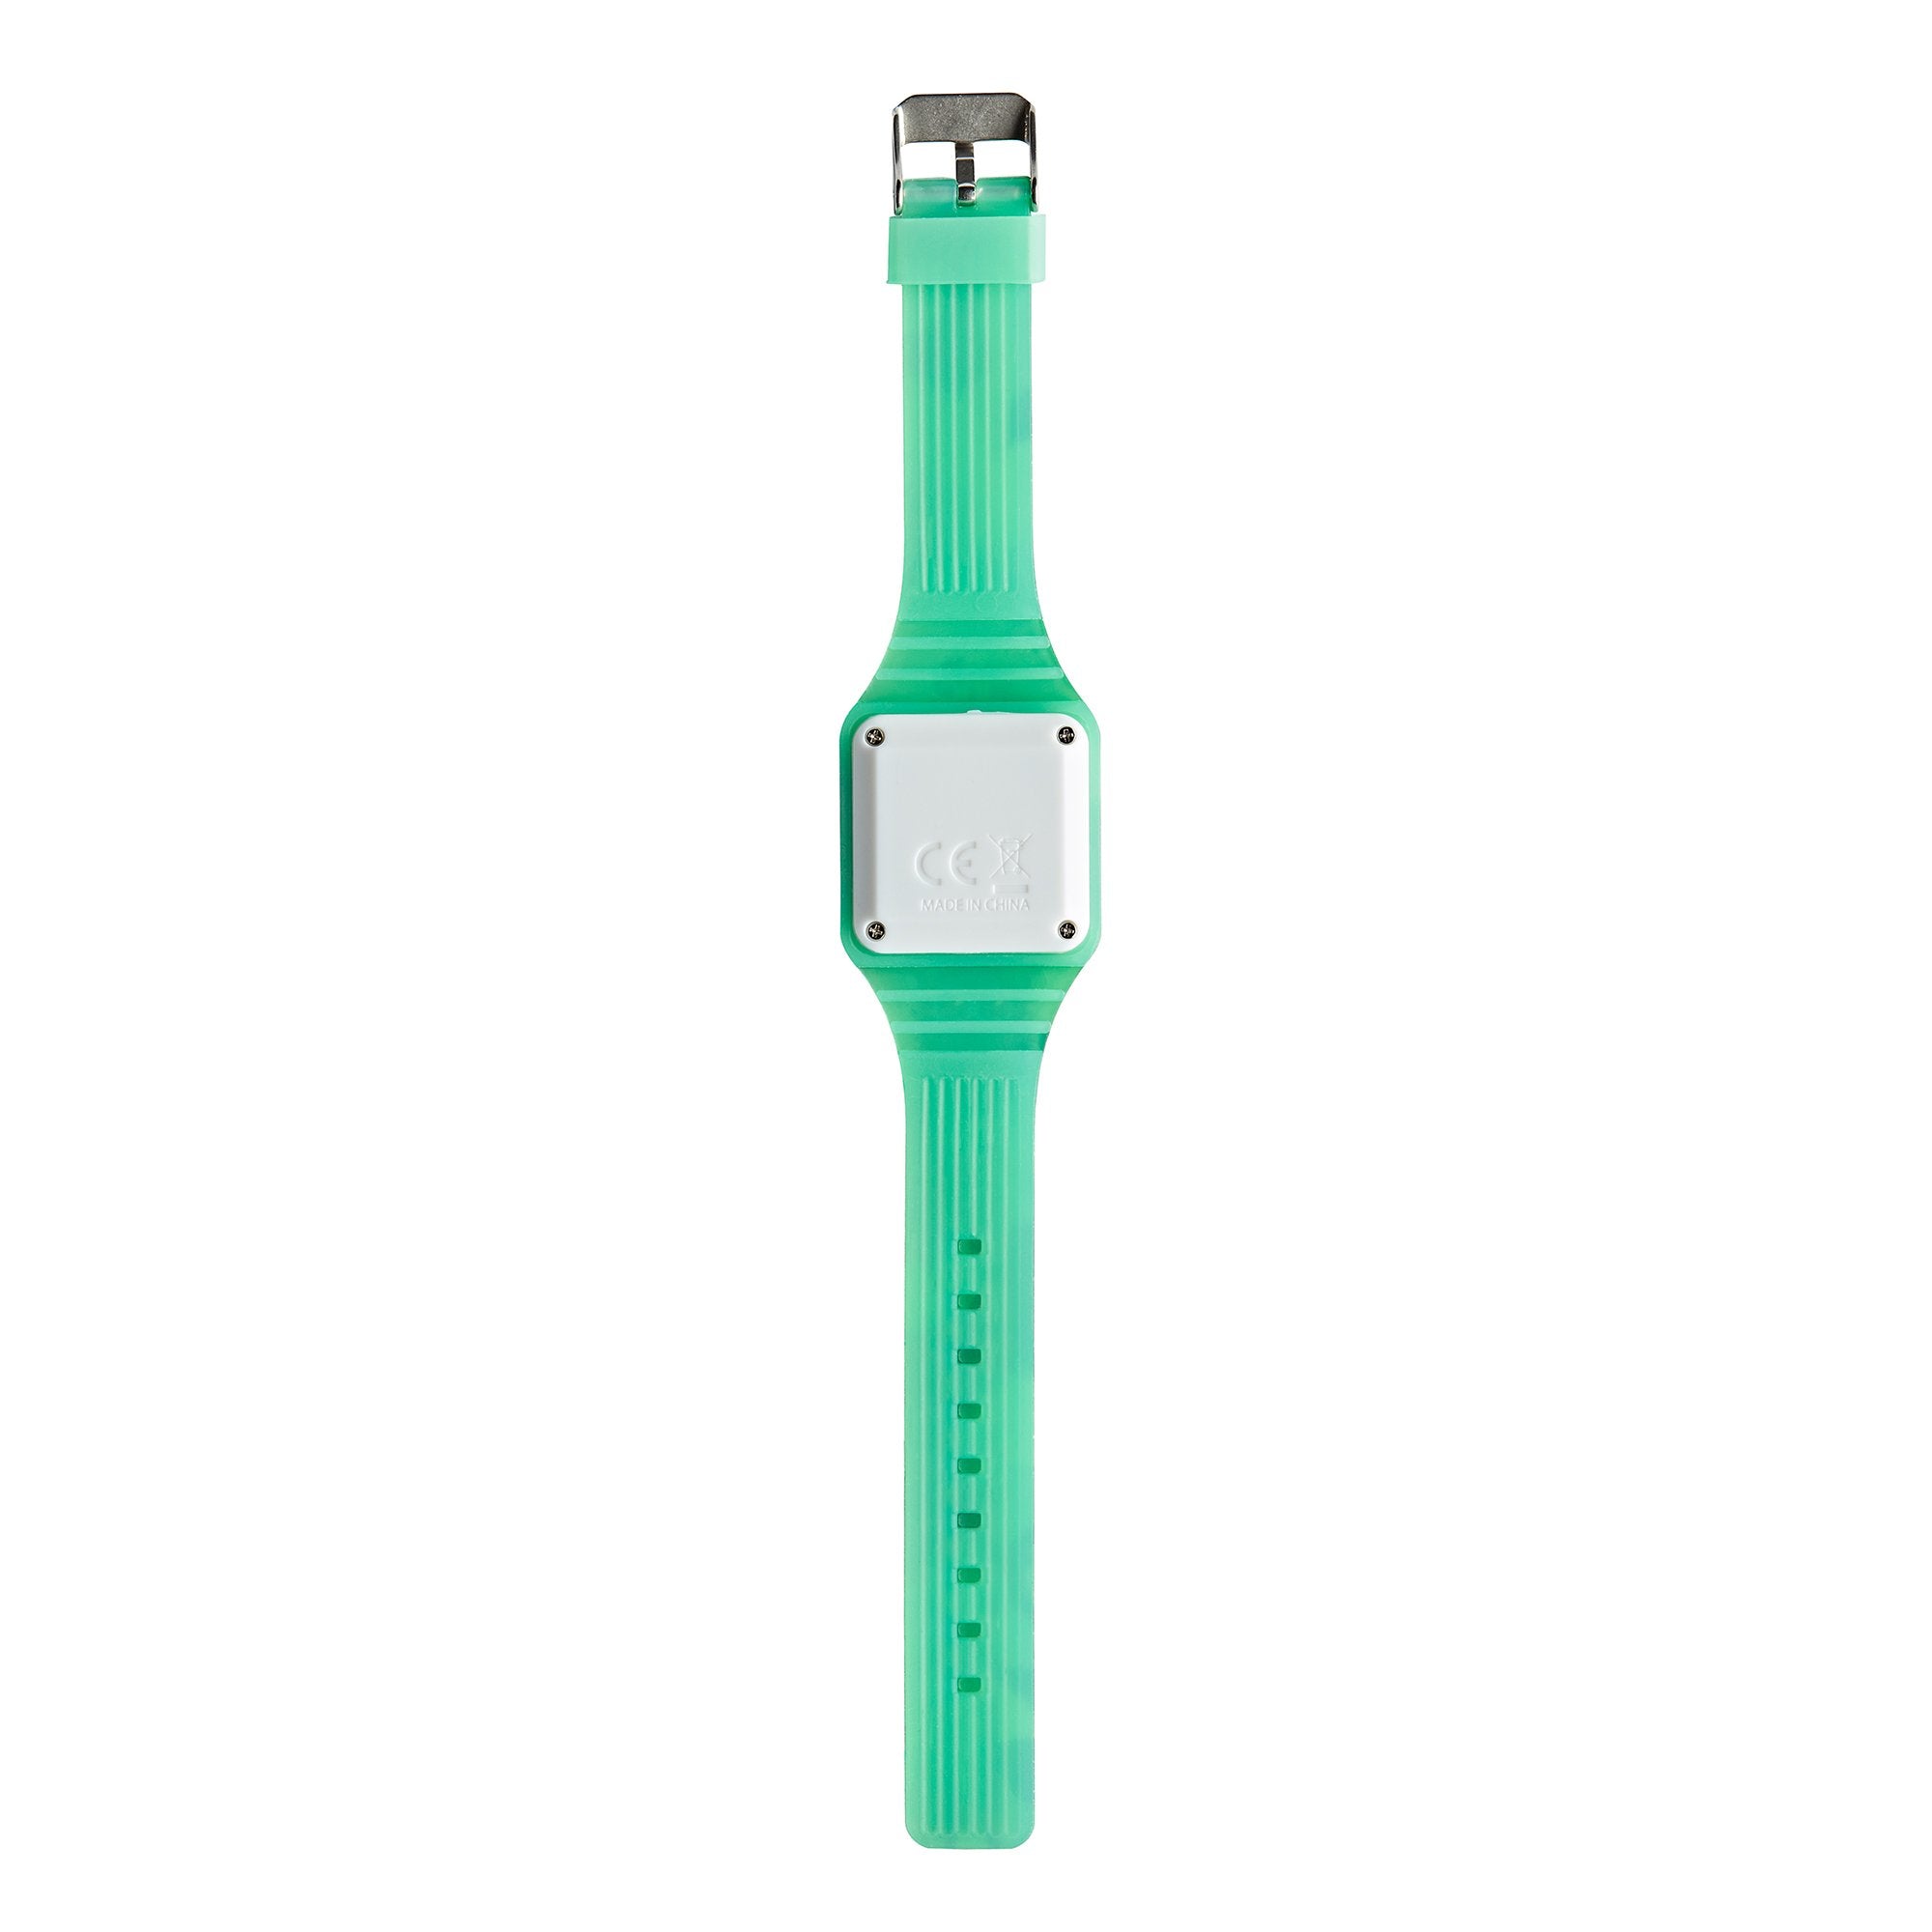 Tinc Digital Touch Watch - Green